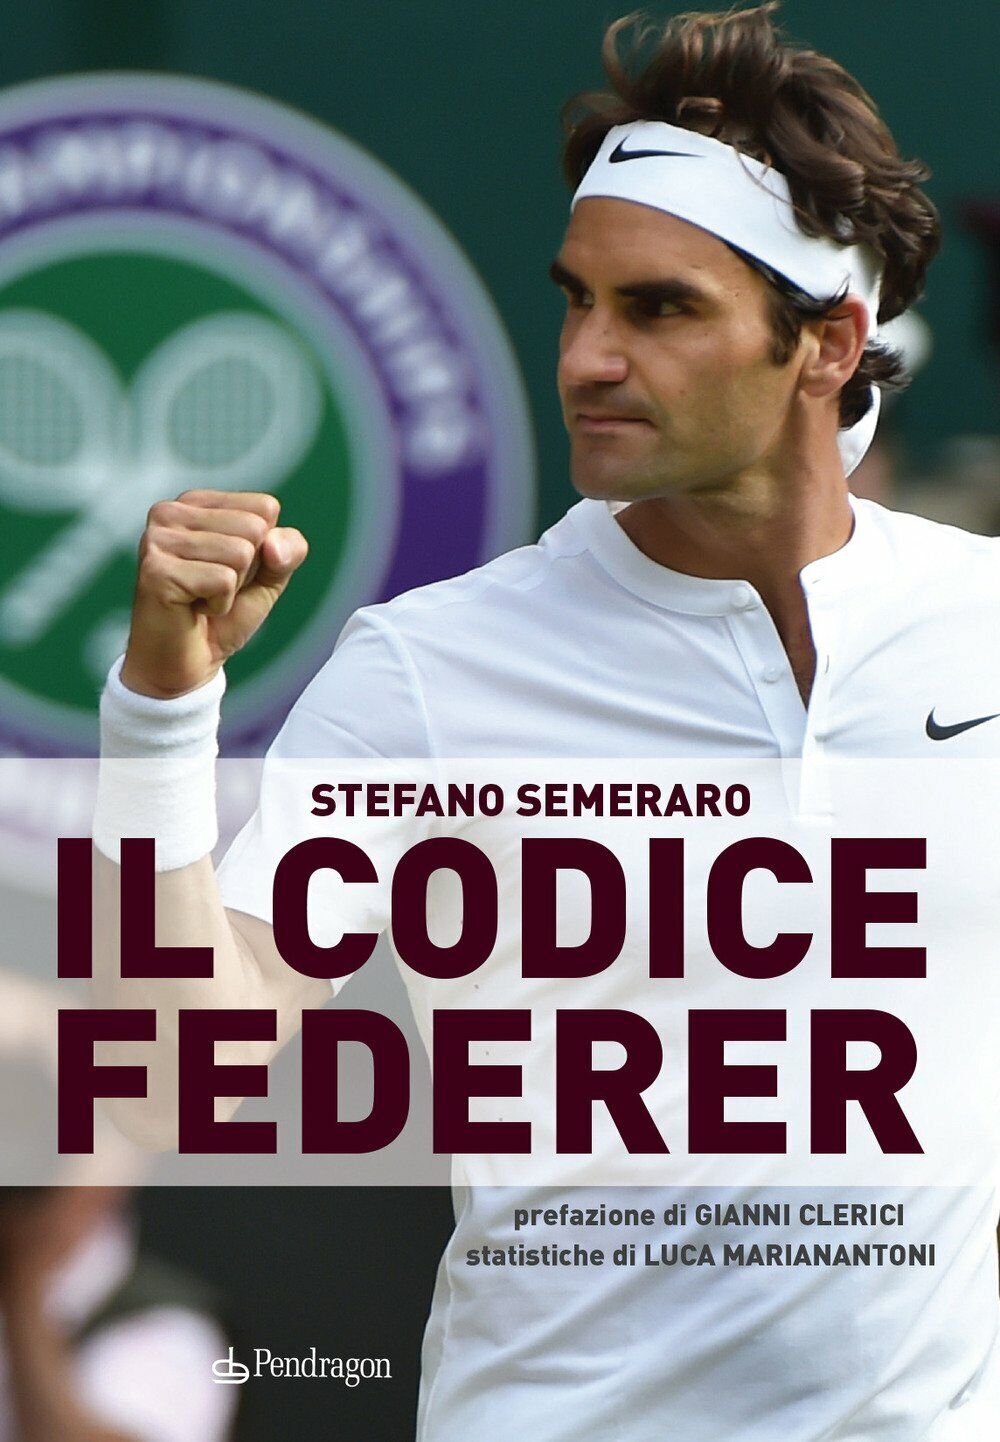 Il codice Federer - Stefano Semeraro - Pendragon, 2018